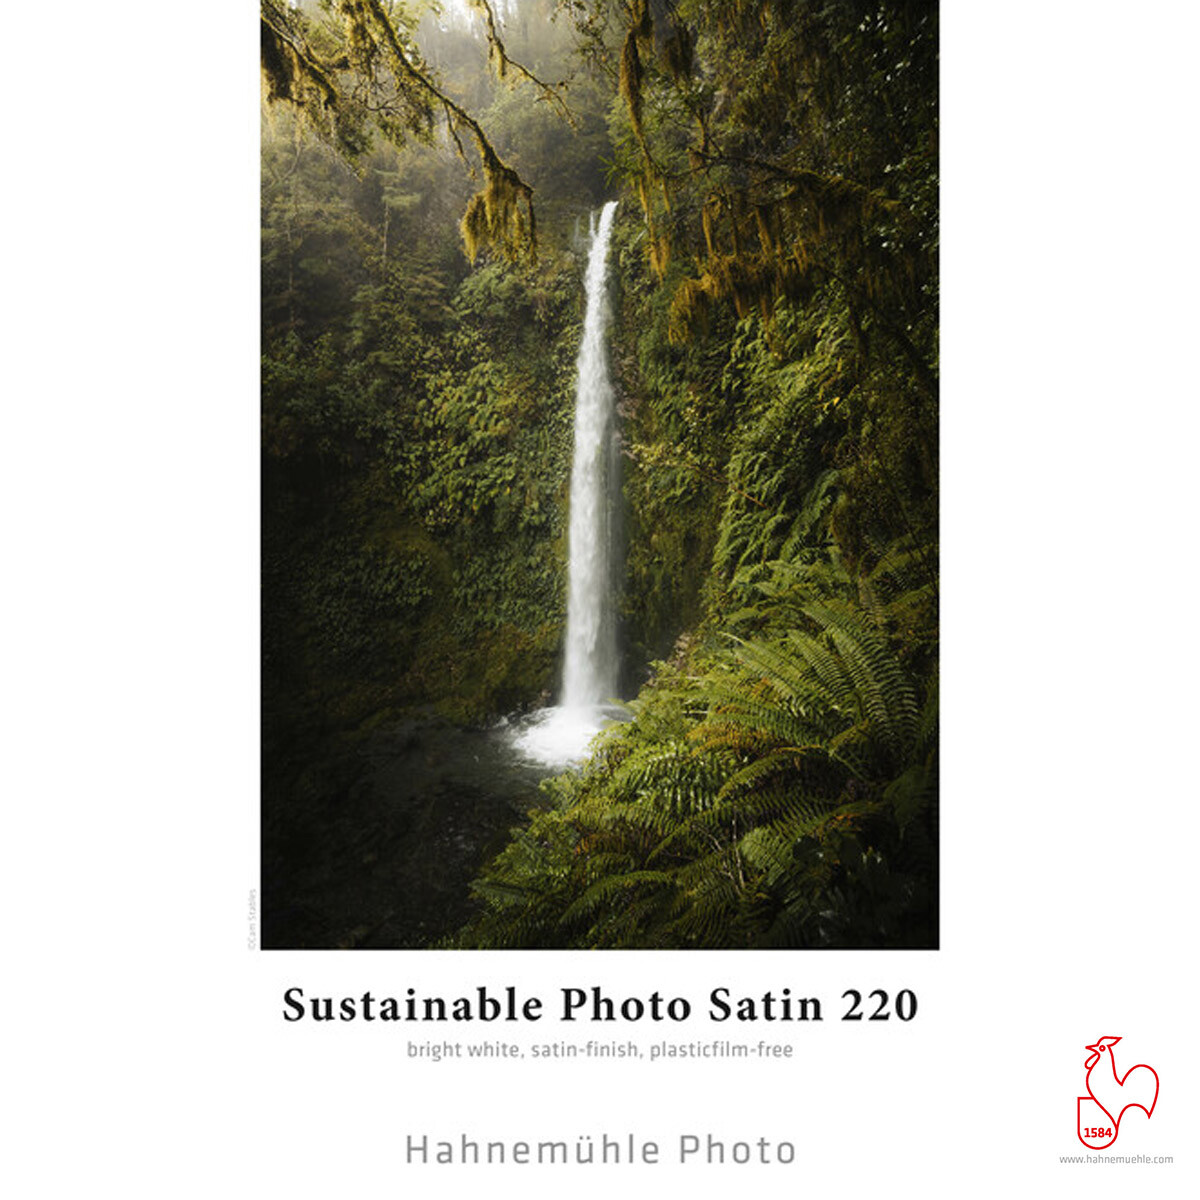 Hahnemühle Sustainable Photo Satin 220 25 Blatt DinA4